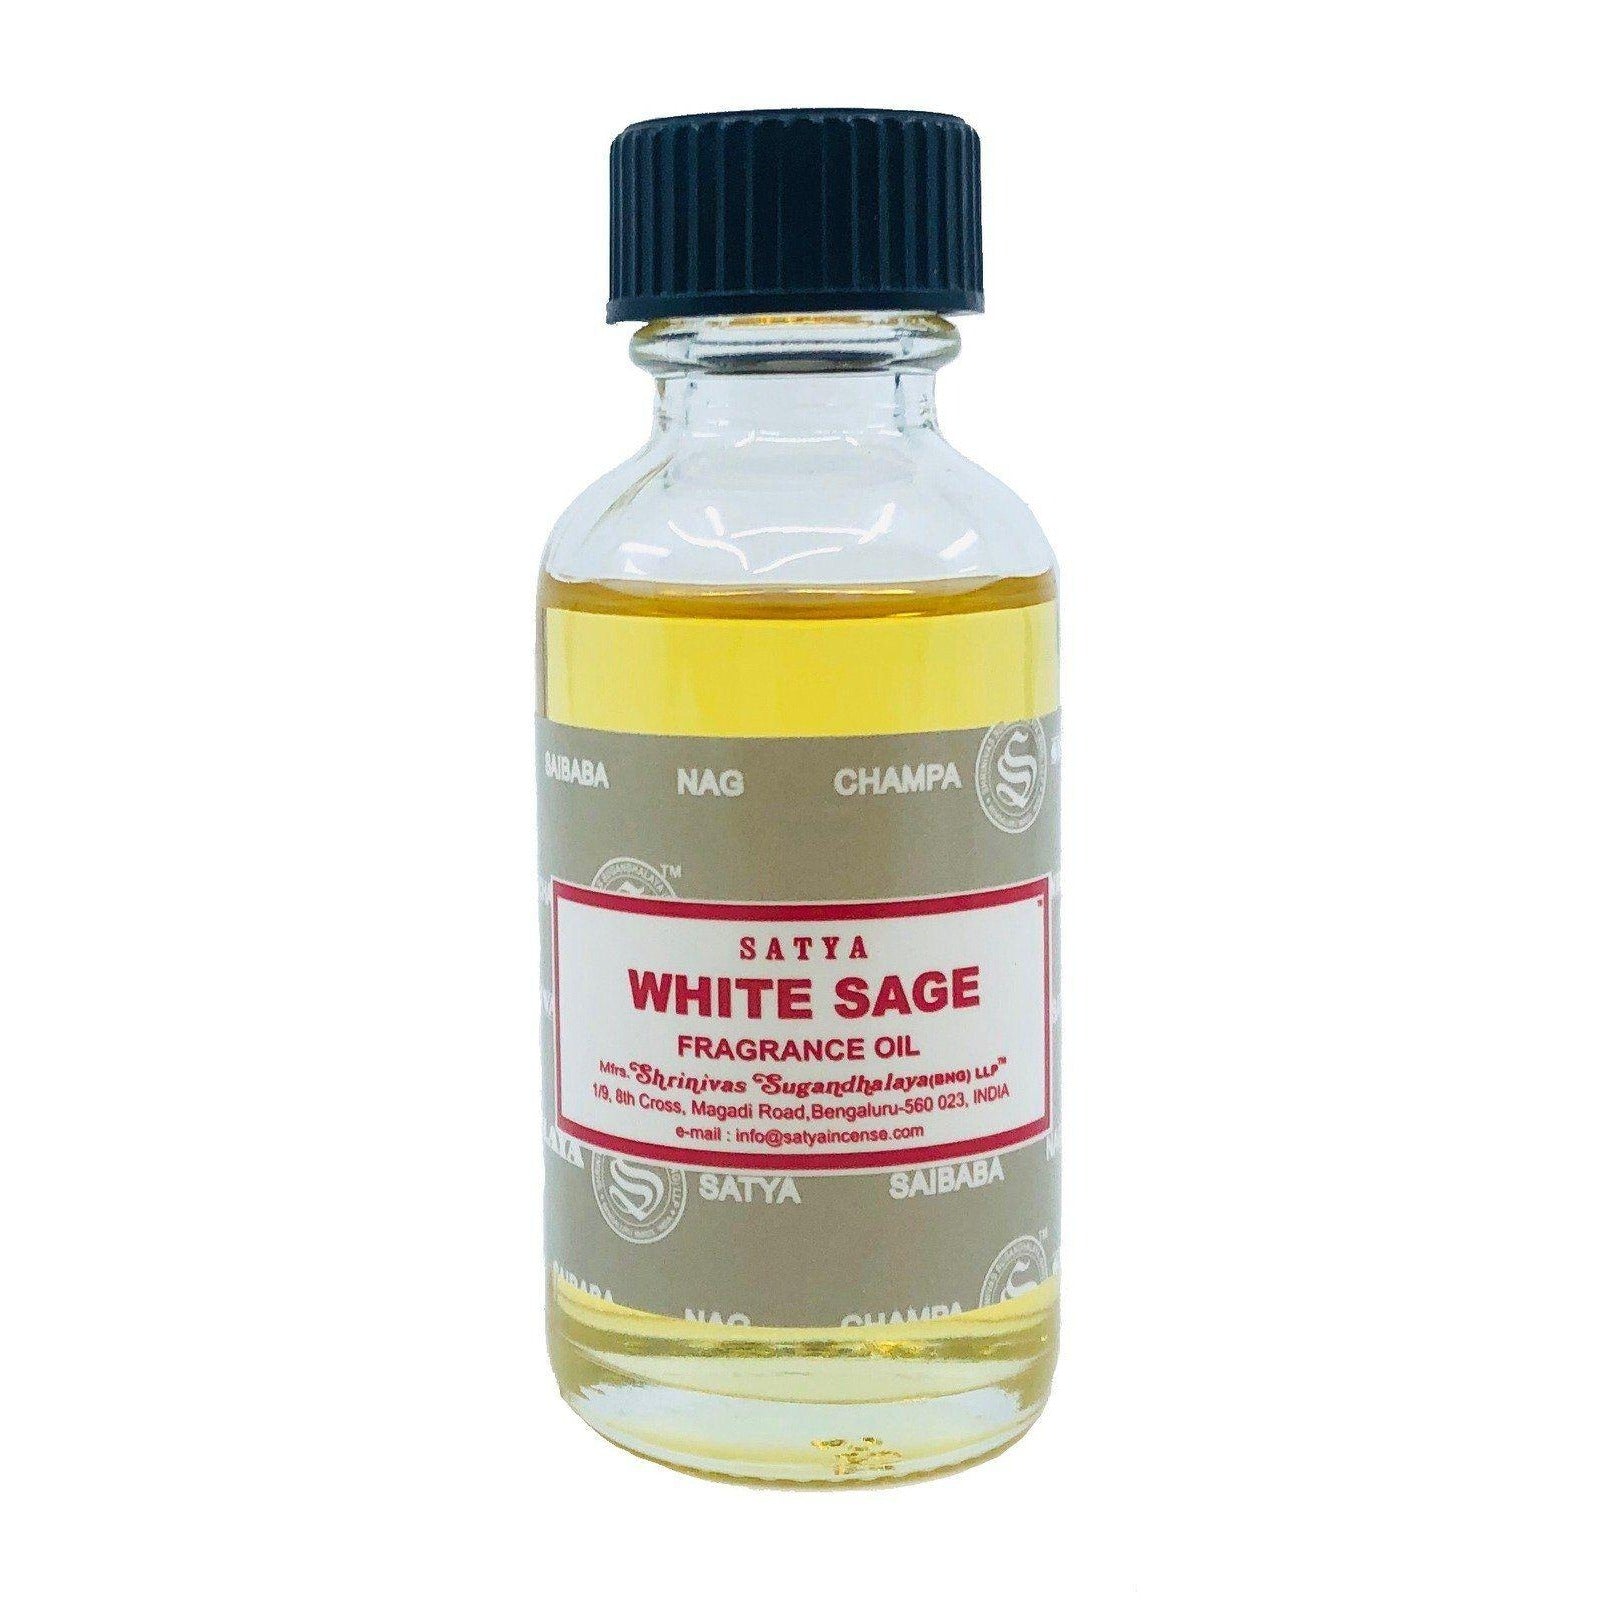 Satya White Sage Fragrance Oil Therapeutic Aromatherapy